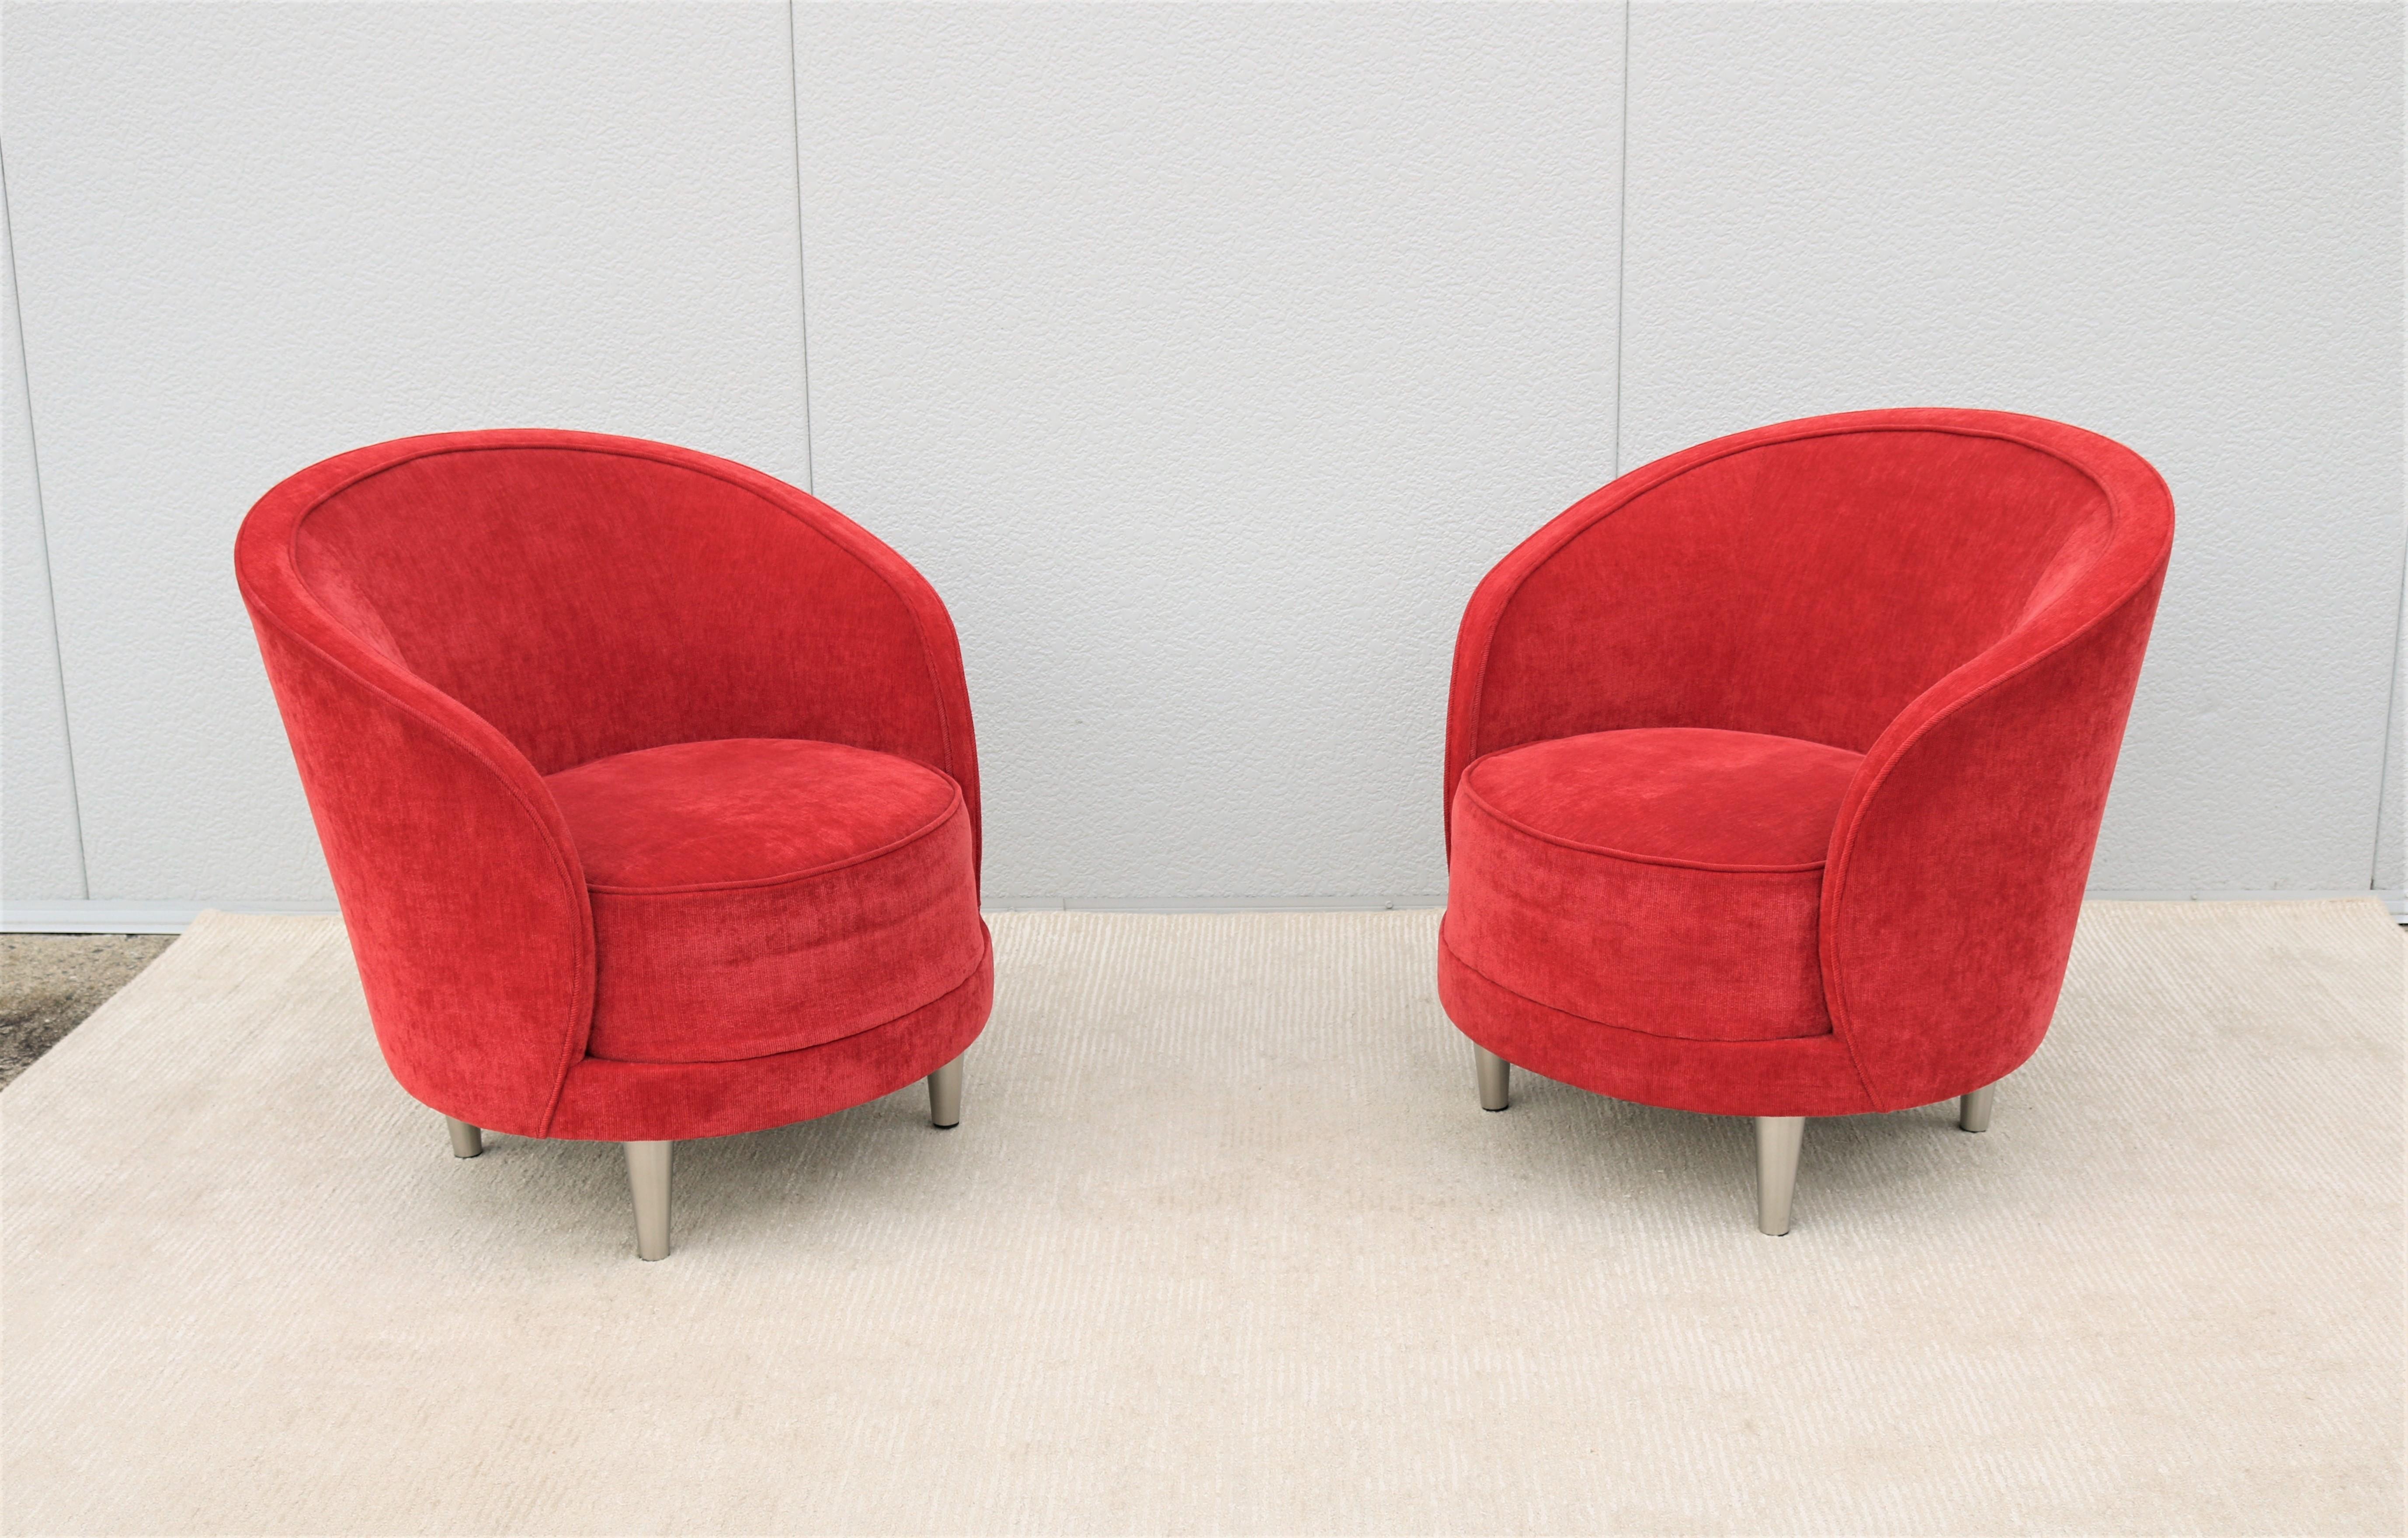 Élégante paire de chaises barriques Kinsale par Martin Brattrud.
Il est doté d'un coussin d'assise très confortable et d'un dossier arrondi ergonomique.
Magnifiquement façonné et fabriqué à la main avec des matériaux et un savoir-faire de la plus